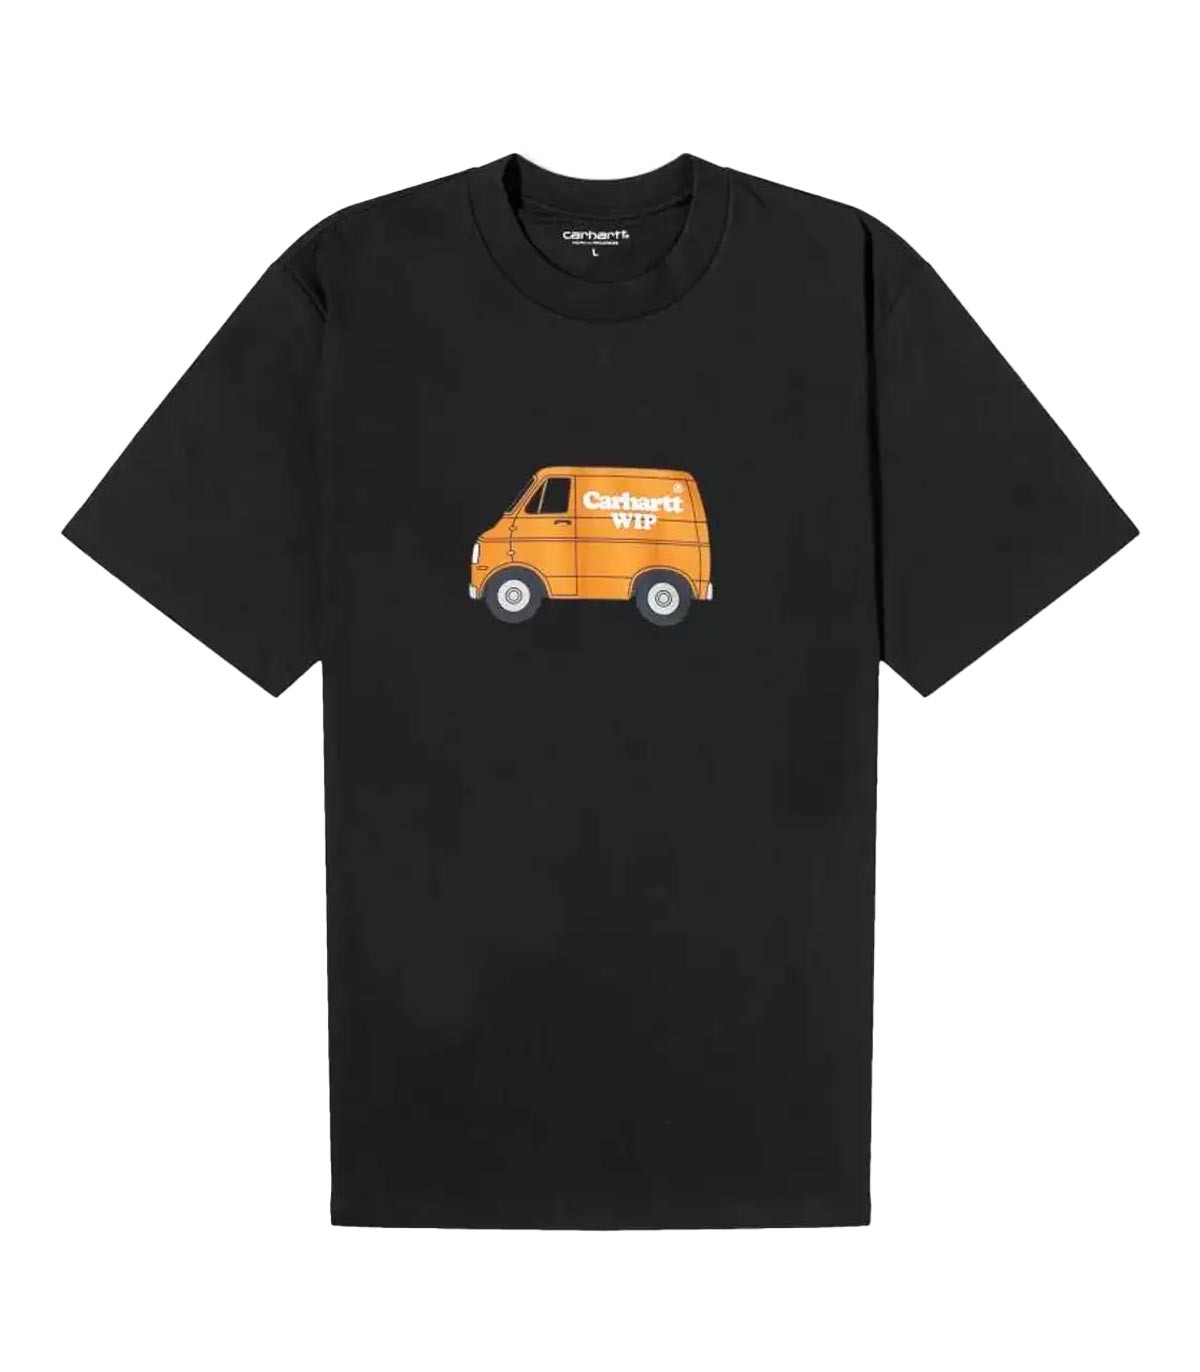 Carhartt Wip - Camiseta Mystery Machine - Negro